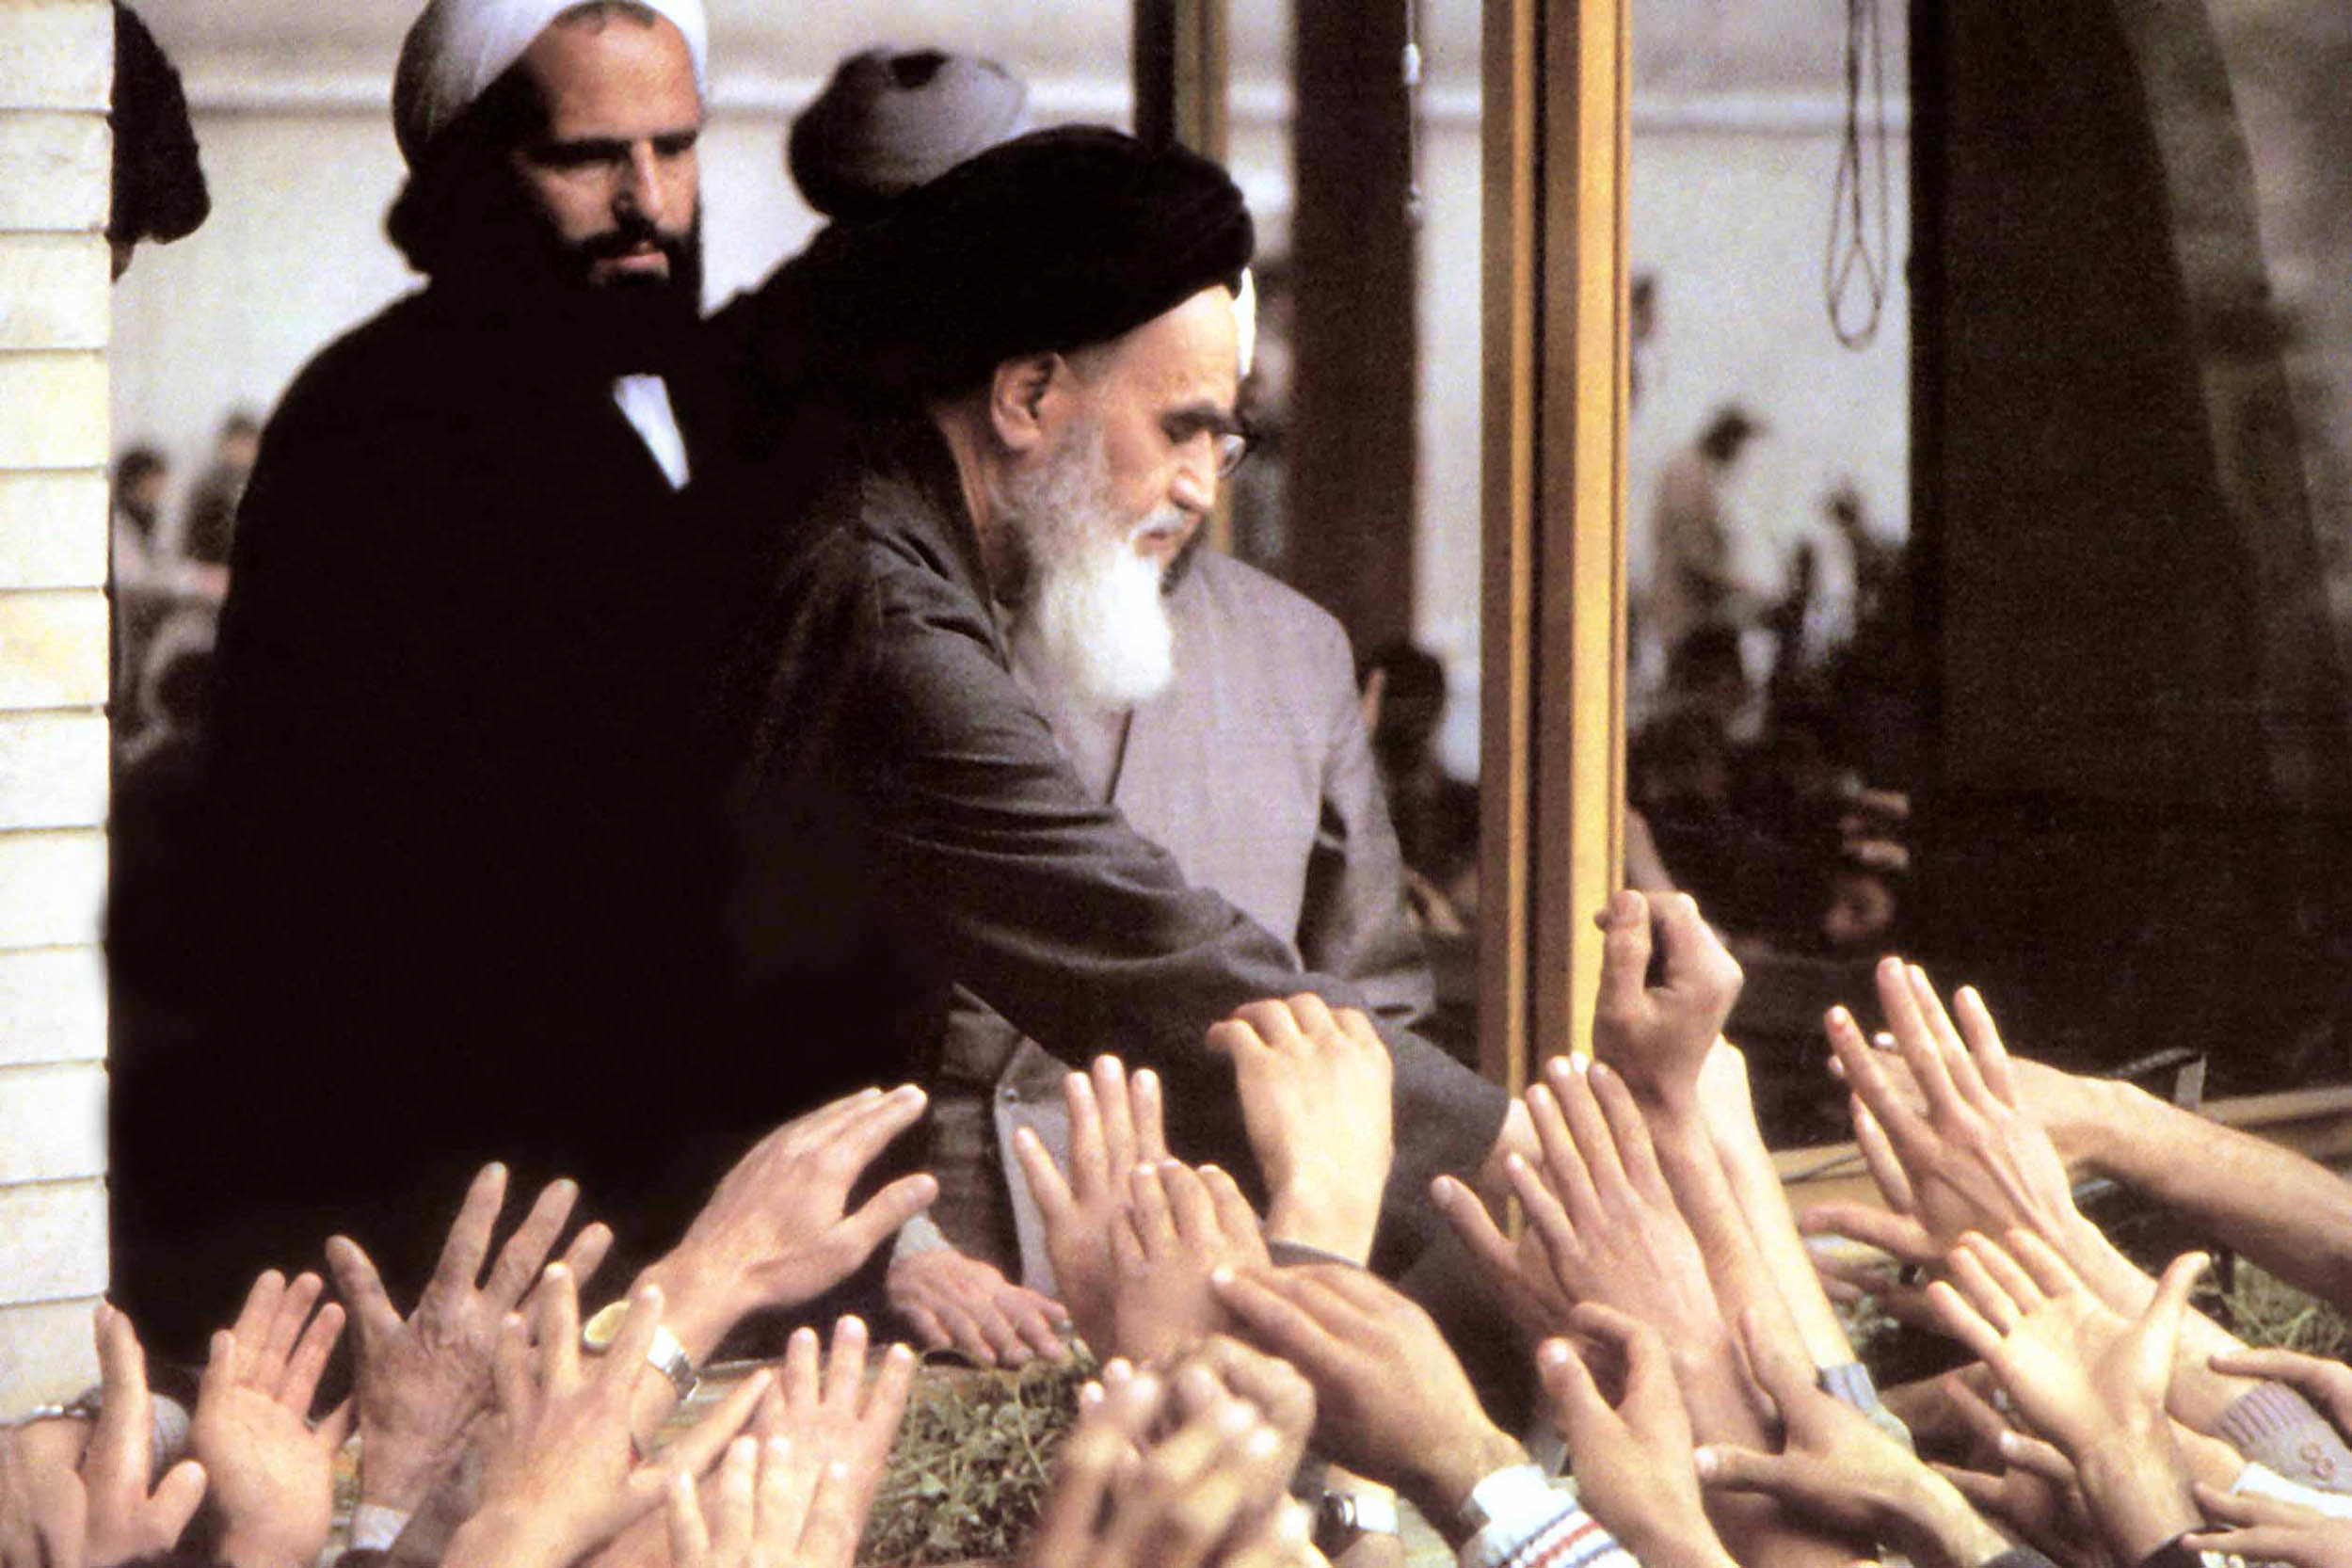 تصاویر کمتر دیده شده از بینانگذار انقلاب اسلامی